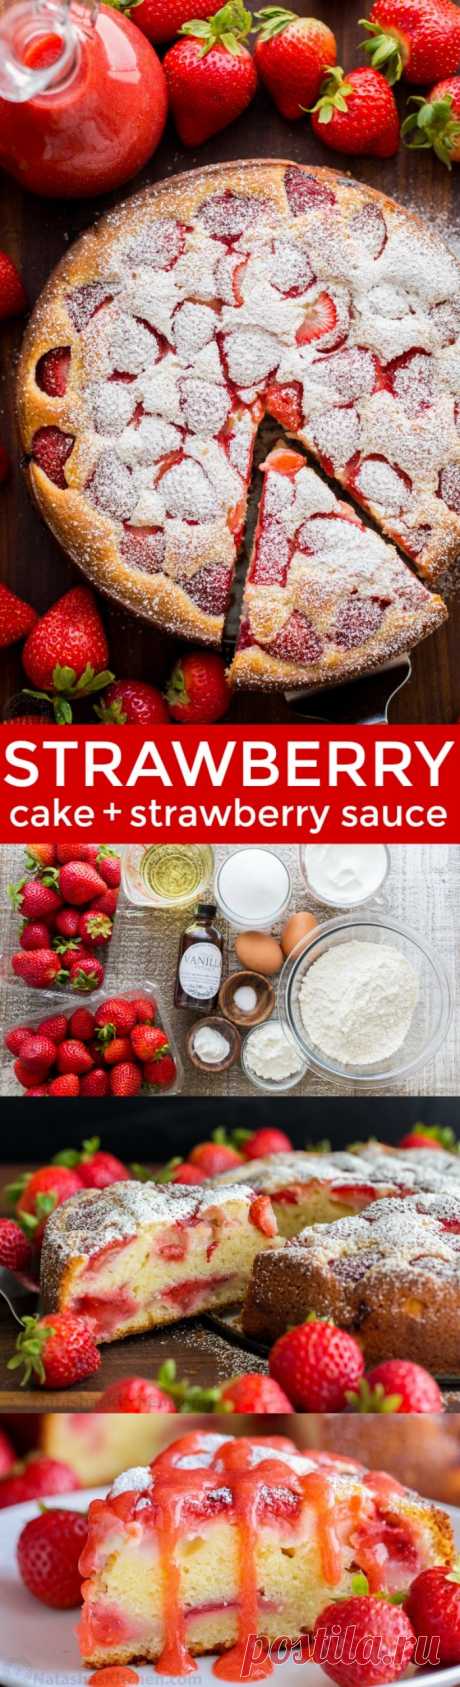 Easy Strawberry Cake with Strawberry Sauce - NatashasKitchen.com